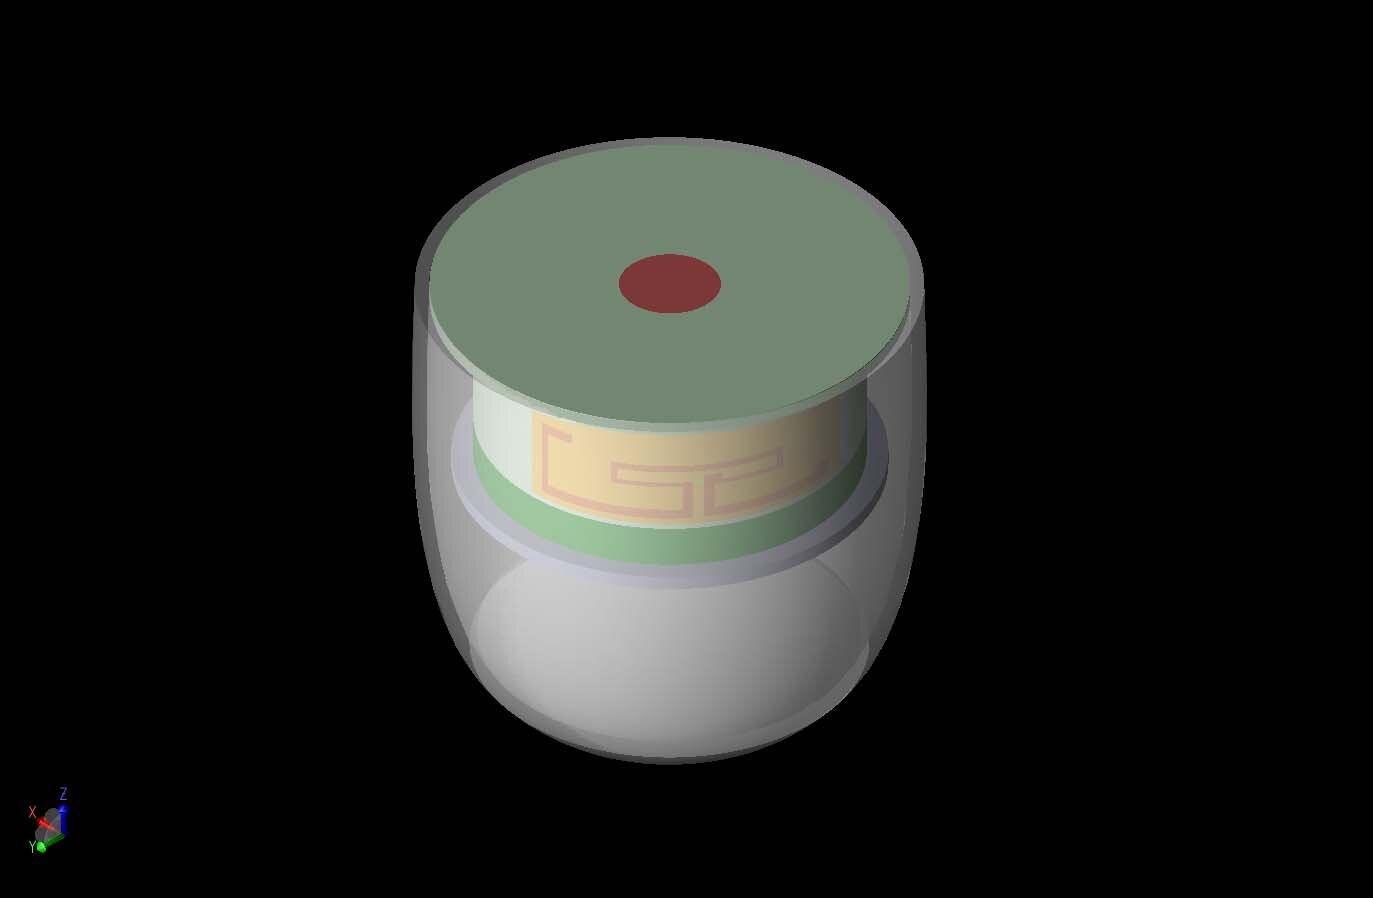 Figura 1: Se muestra una vista tridimensional de un dispositivo genérico de cámara remota con los conjuntos de antenas internas parcialmente visibles a través de la cubierta.